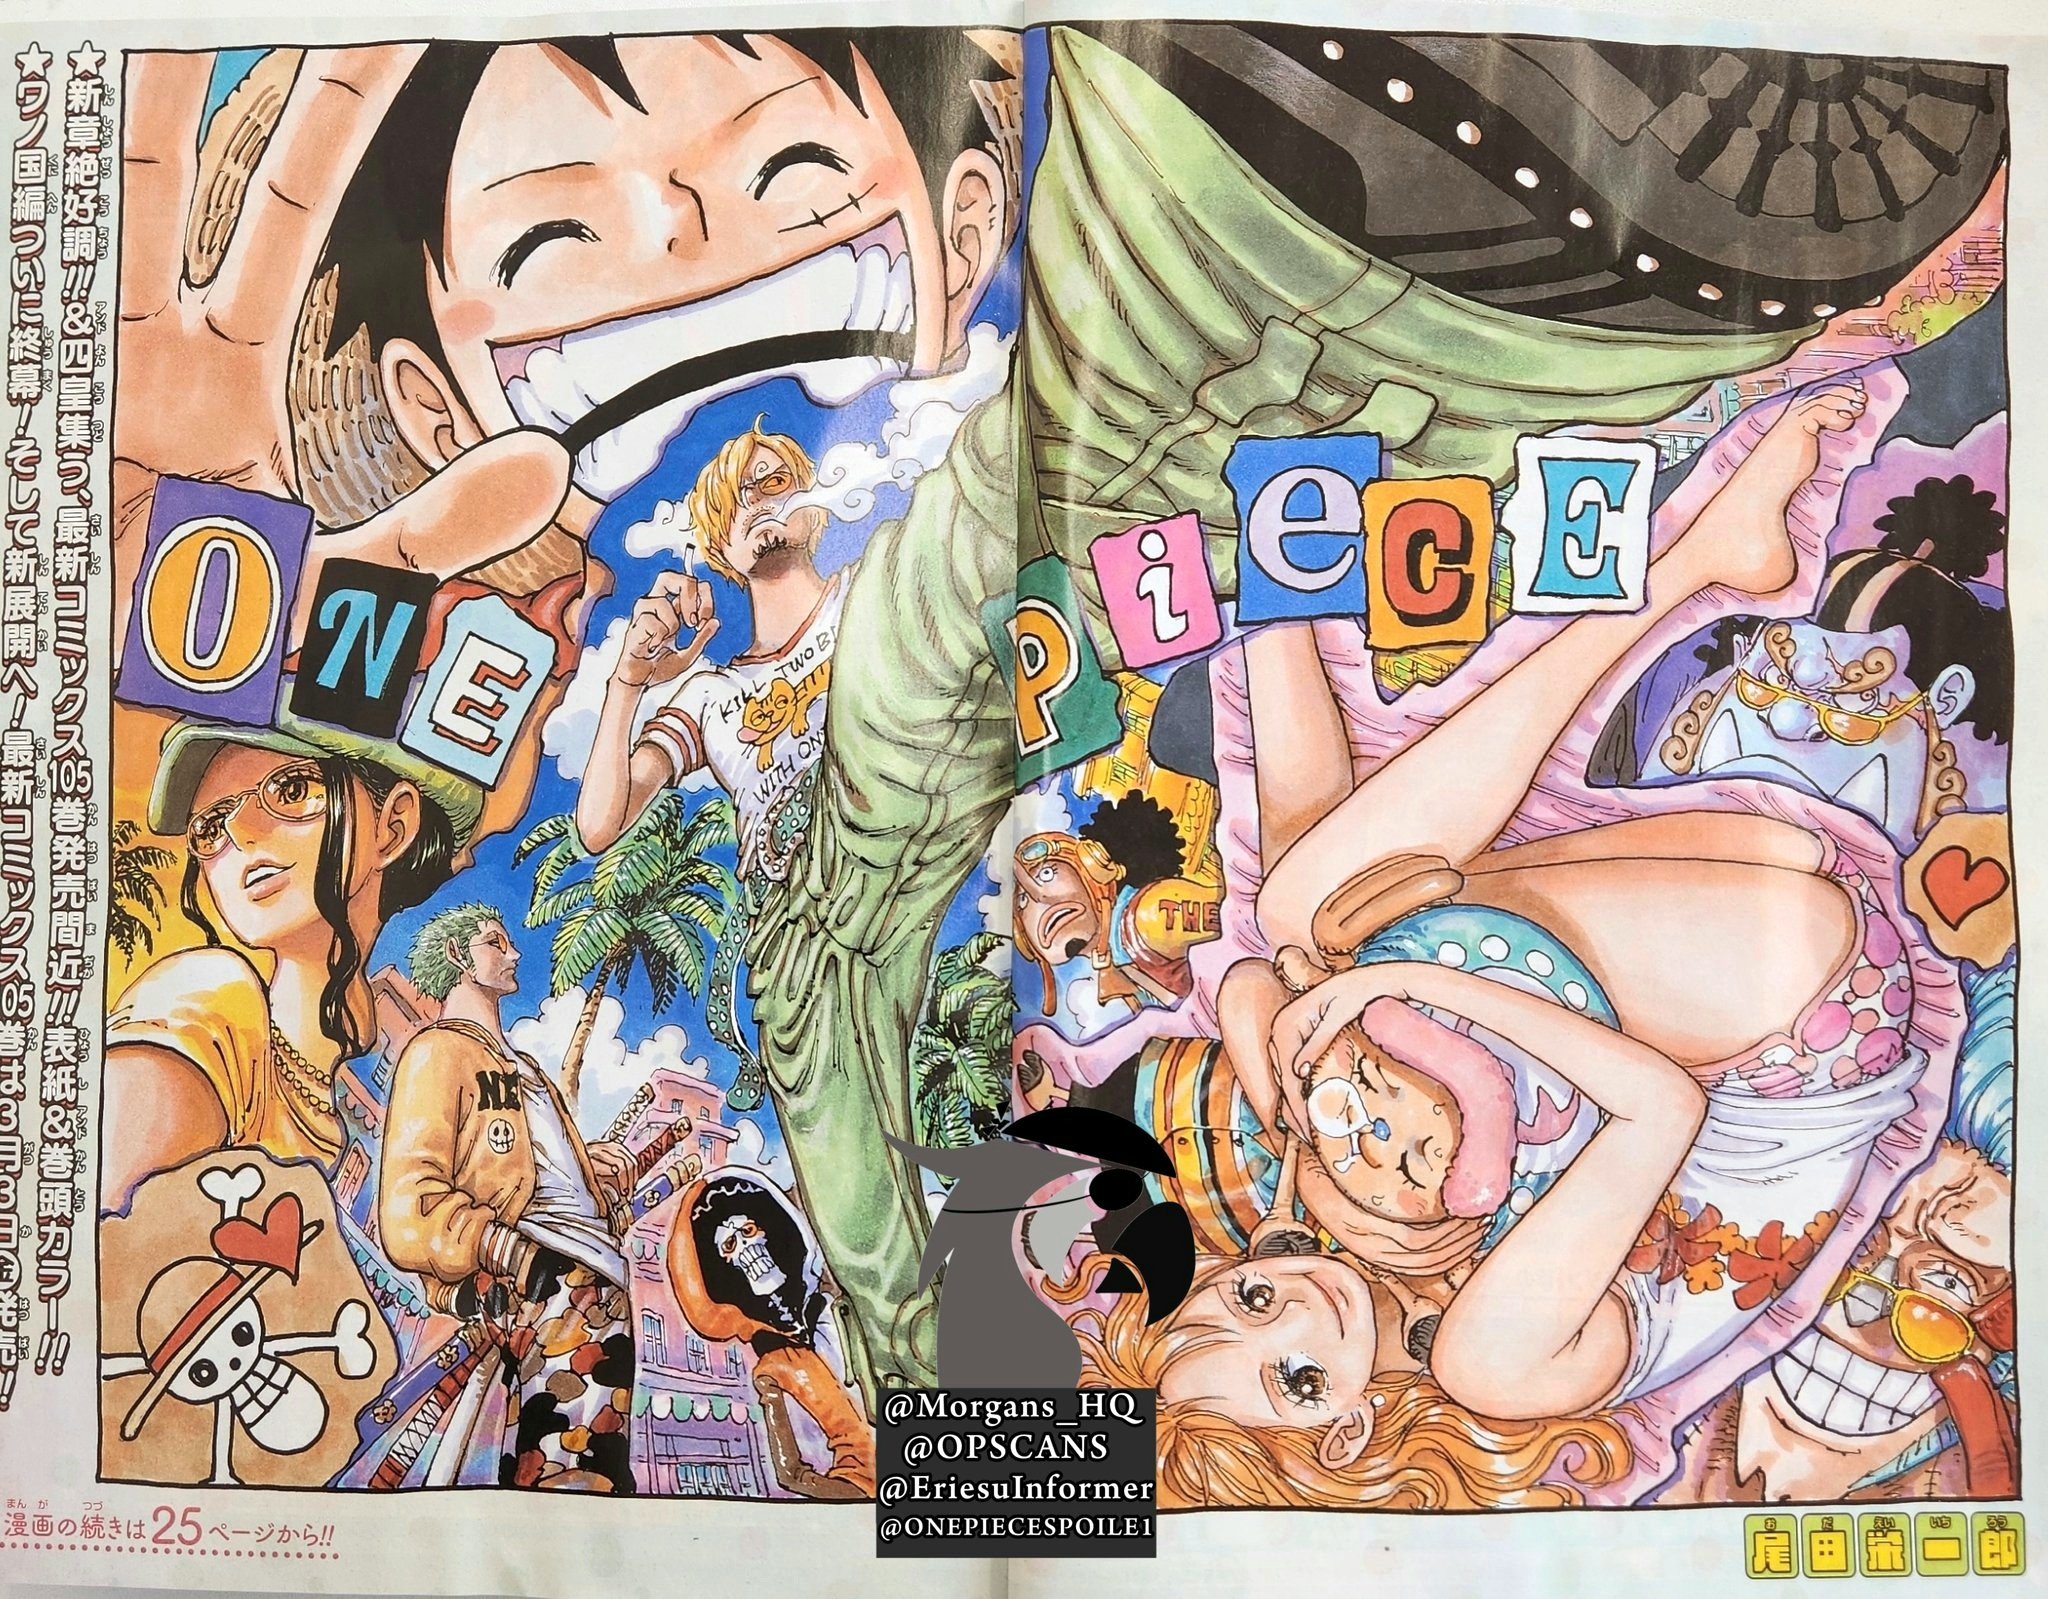 Spoiler] - 1077 Spoiler Metin ve Resimleri  One Piece Türkiye Fan Sayfası, One  Piece Türkçe Manga, One Piece Bölümler, One Piece Film